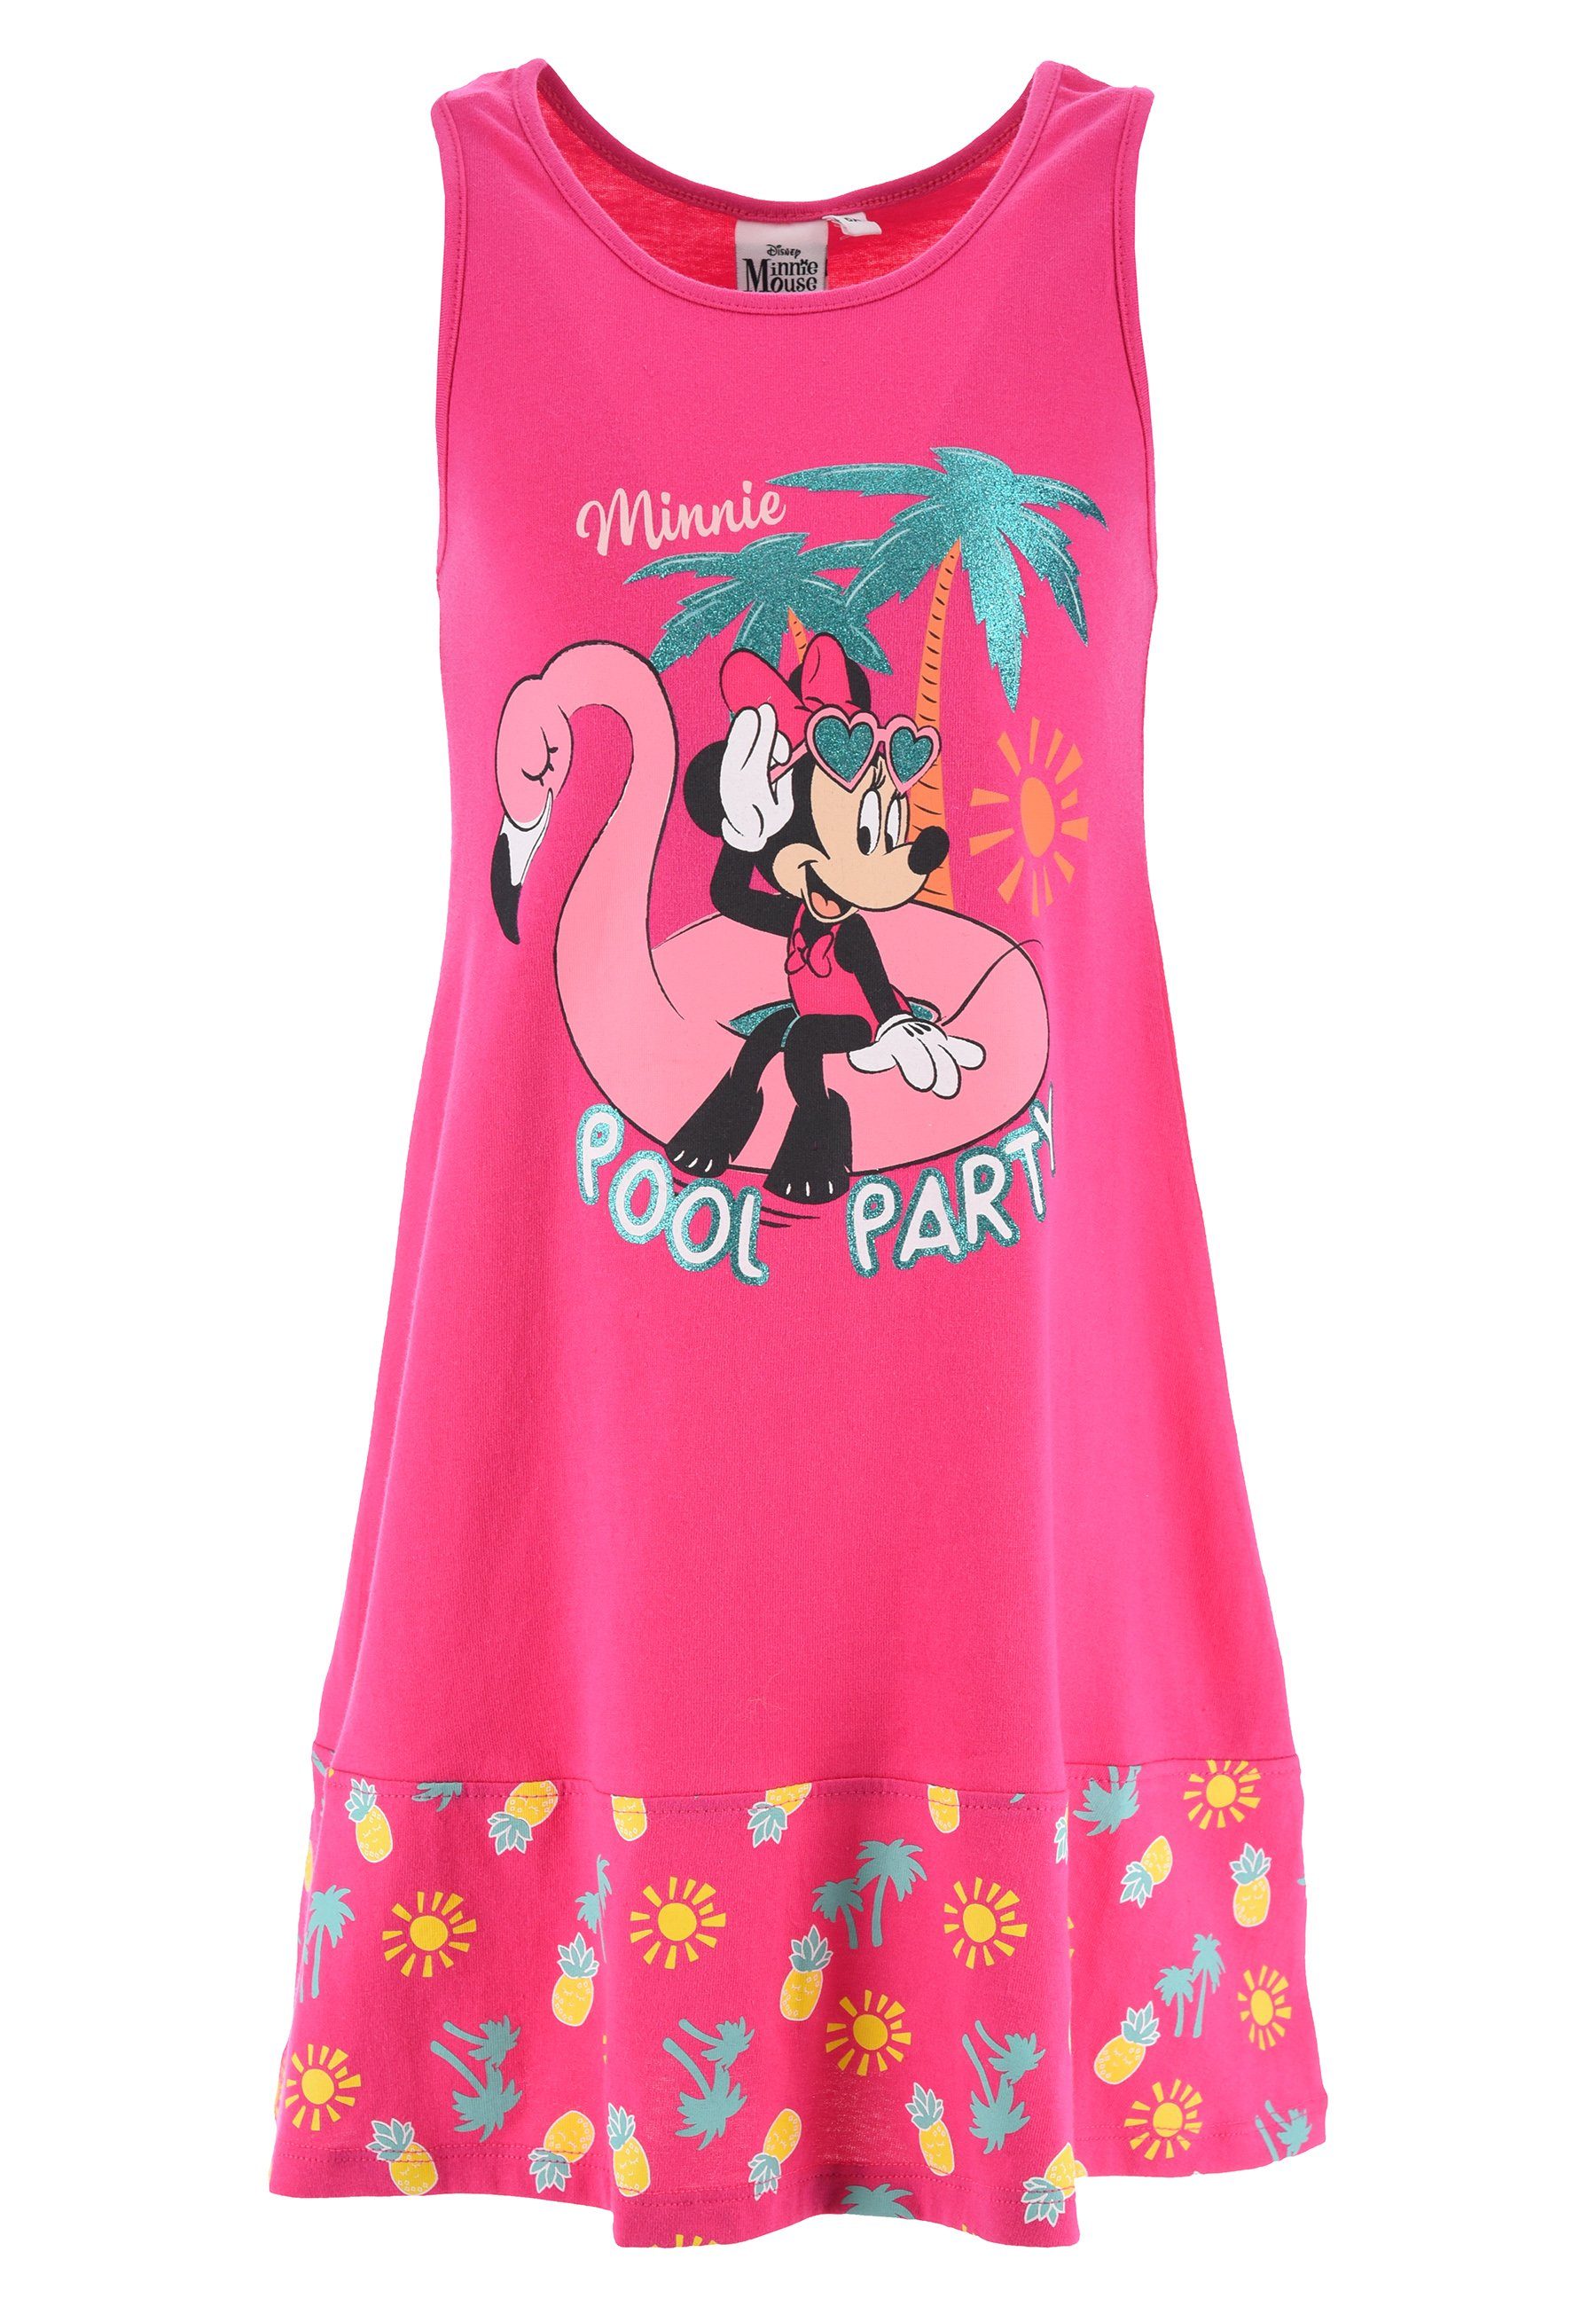 Mädchen Ärmellos Pink Sommerkleid Strand-Kleid Disney Mouse Sommer-Kleid Minnie